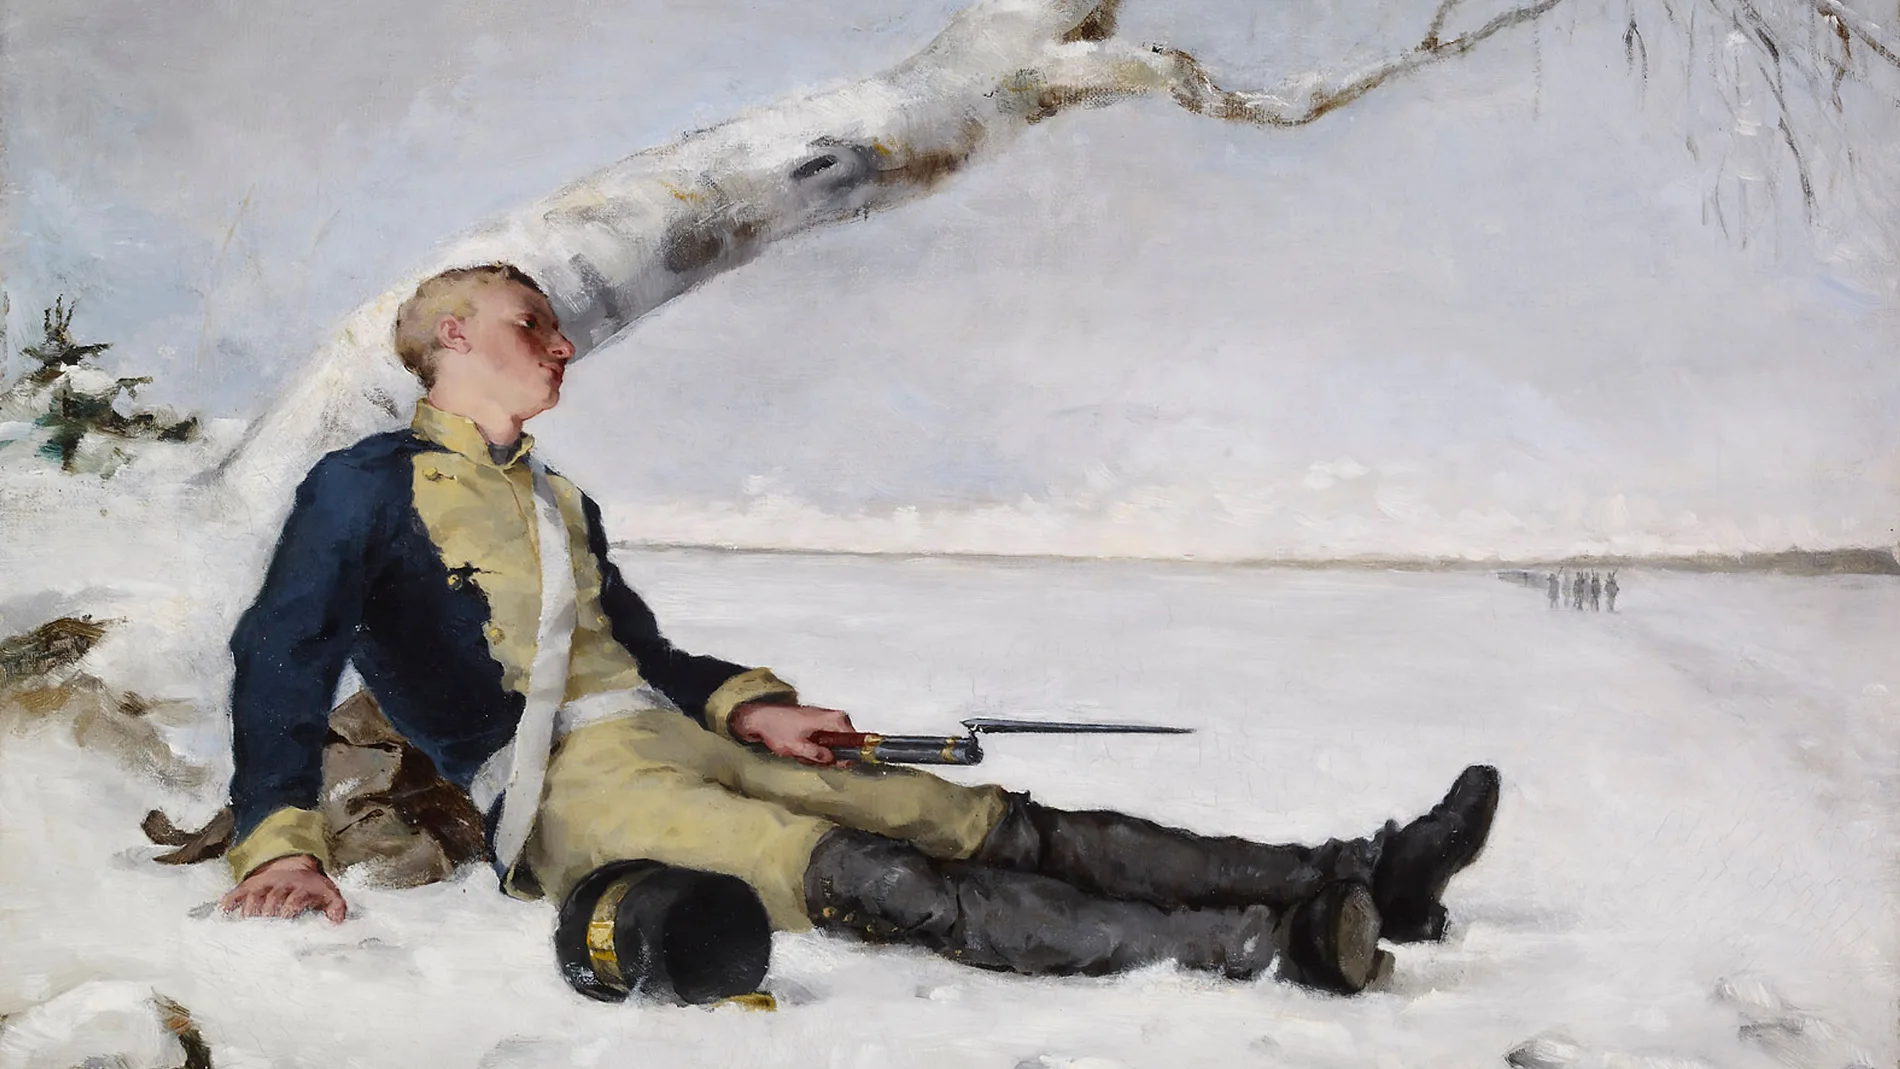 Soldado herido en la nieve, pintura de Helene Schjerfbeck que retrata una escena de la Guerra finlandesa.